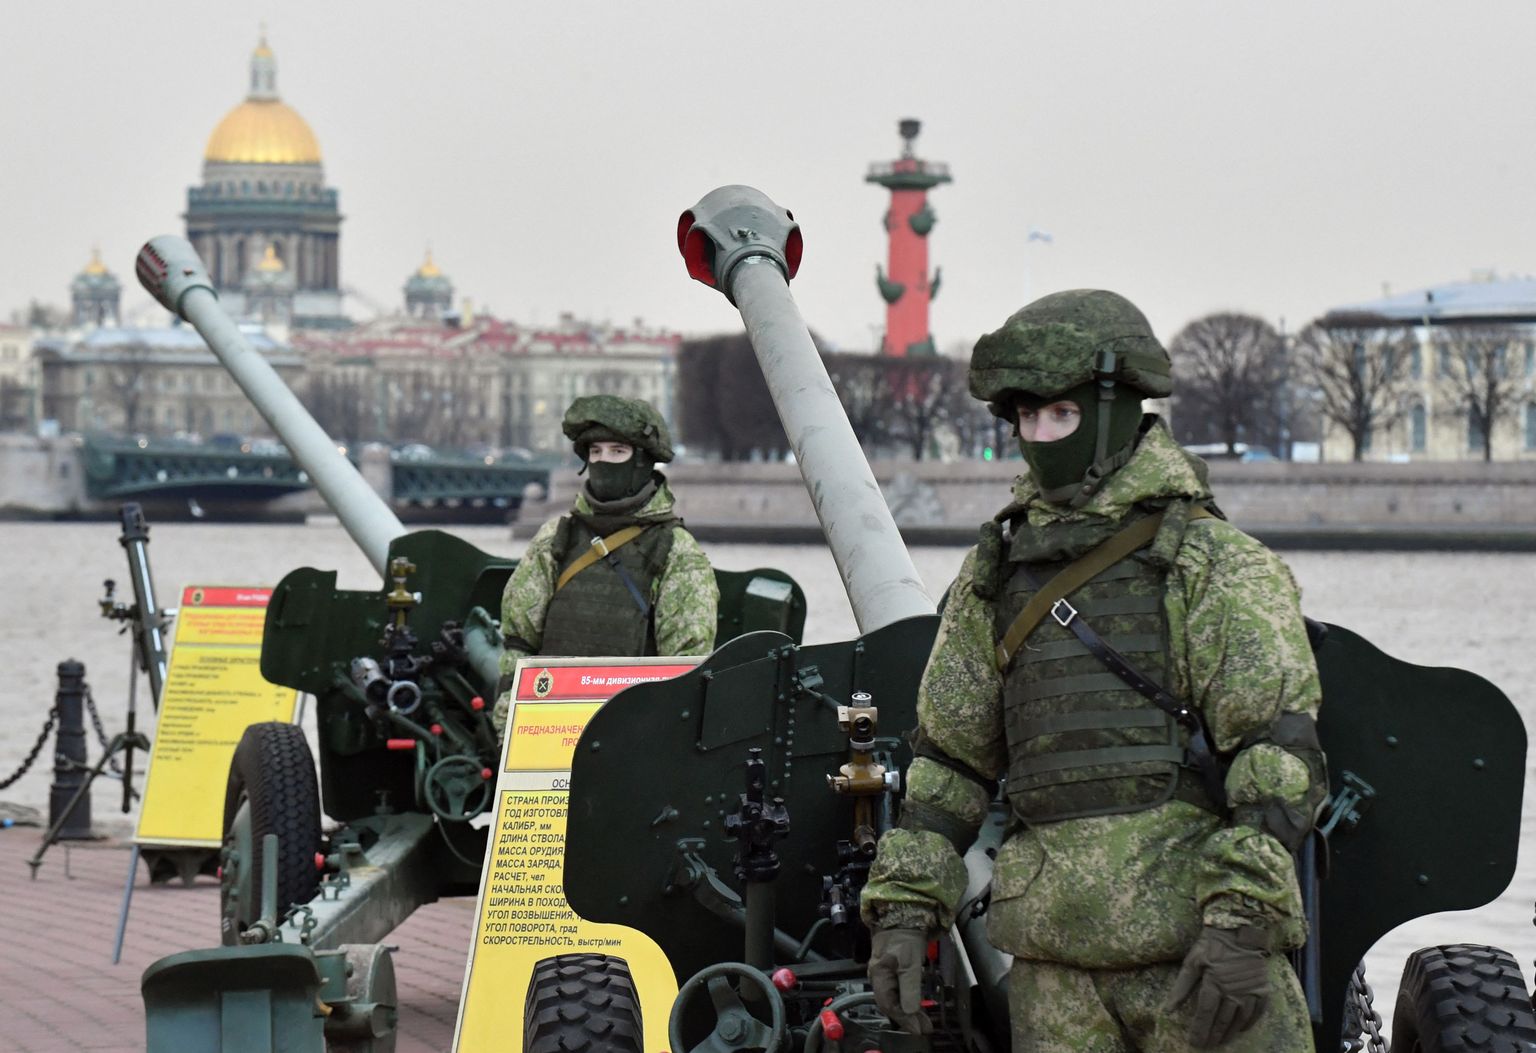 Venemaal toimunud sõjaväeparaad. Foto on illustratiivne.